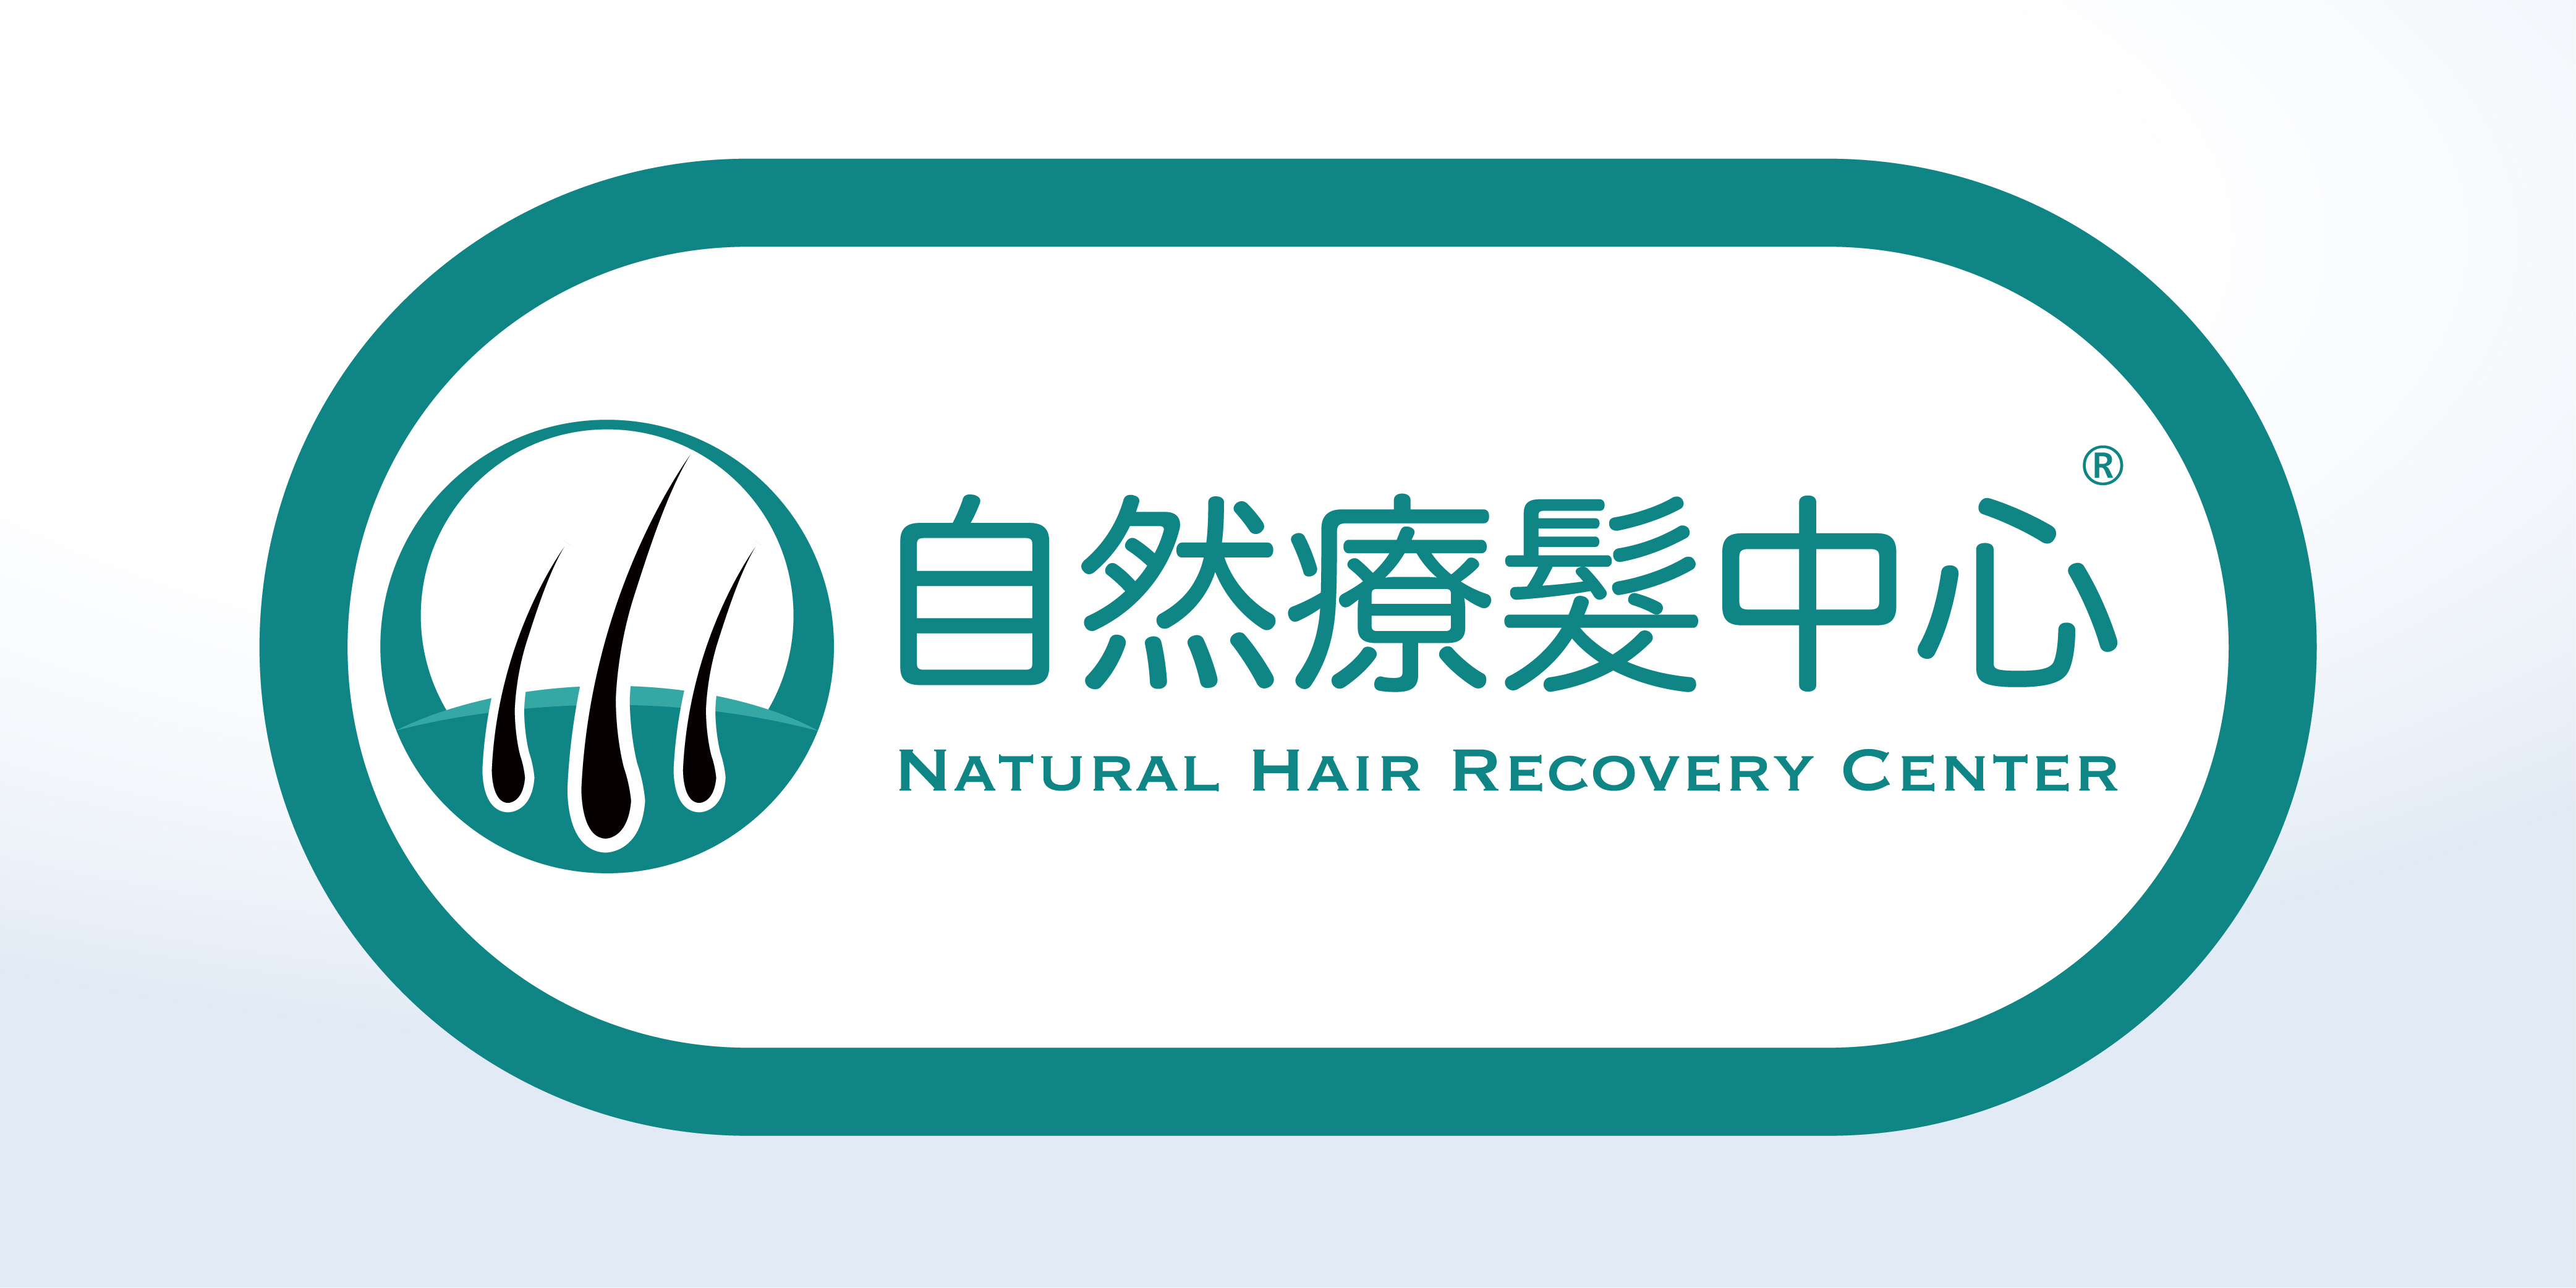 洗剪吹/洗吹造型: 自然療髮中心 Natural Hair Recovery Center ®